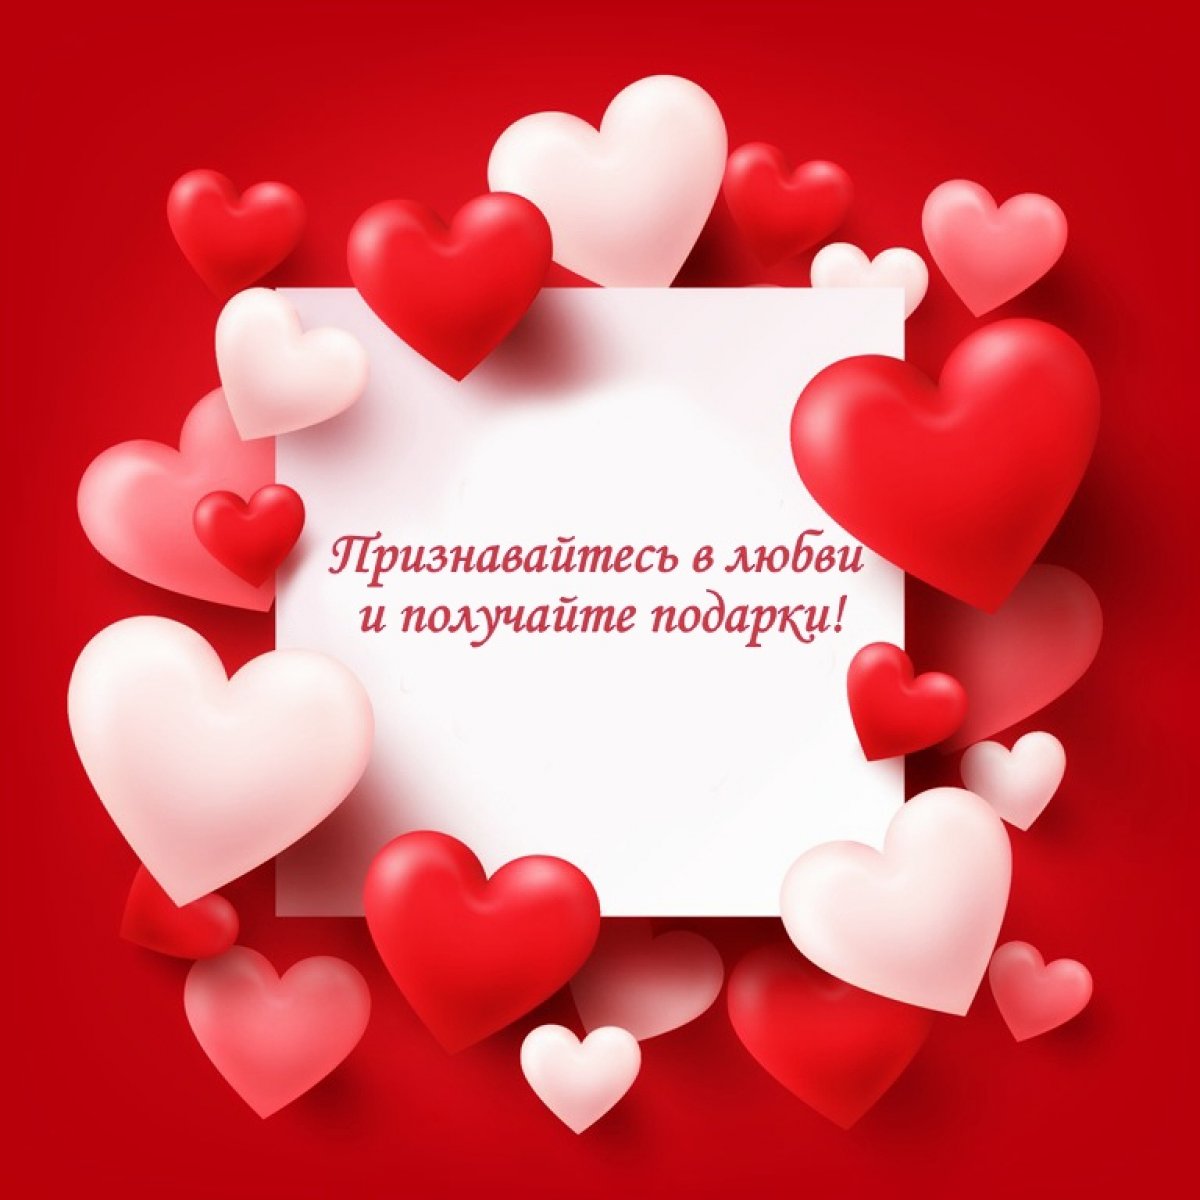 ❤ В преддверии Дня святого Валентина УлГУ запускает конкурс на лучшее признание в любви!